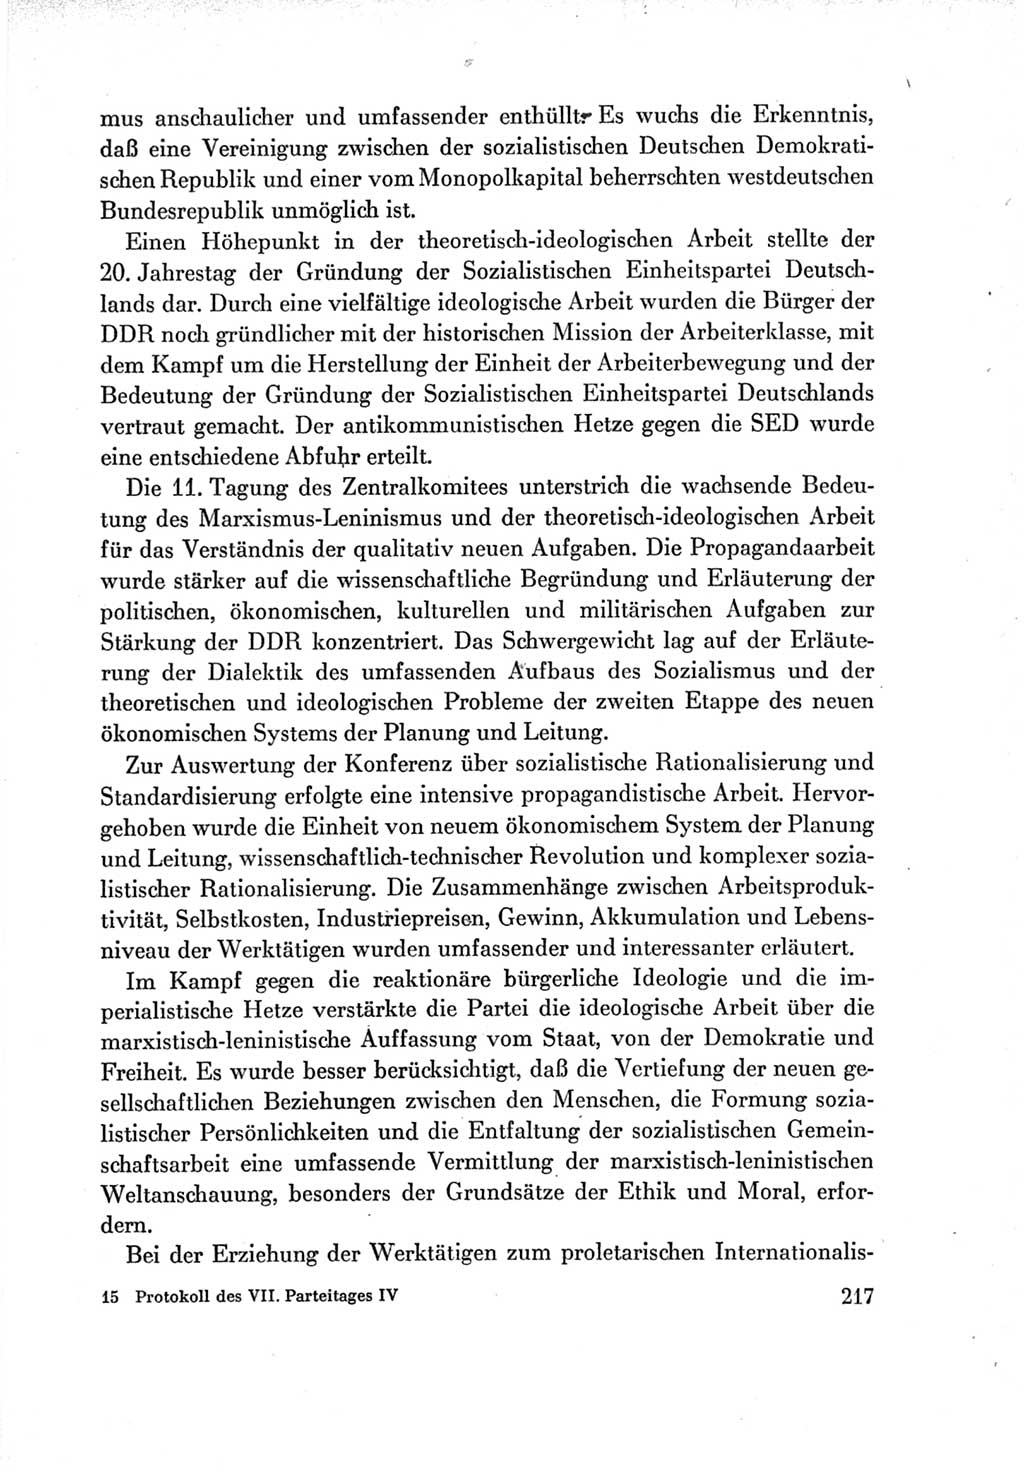 Protokoll der Verhandlungen des Ⅶ. Parteitages der Sozialistischen Einheitspartei Deutschlands (SED) [Deutsche Demokratische Republik (DDR)] 1967, Band Ⅳ, Seite 217 (Prot. Verh. Ⅶ. PT SED DDR 1967, Bd. Ⅳ, S. 217)